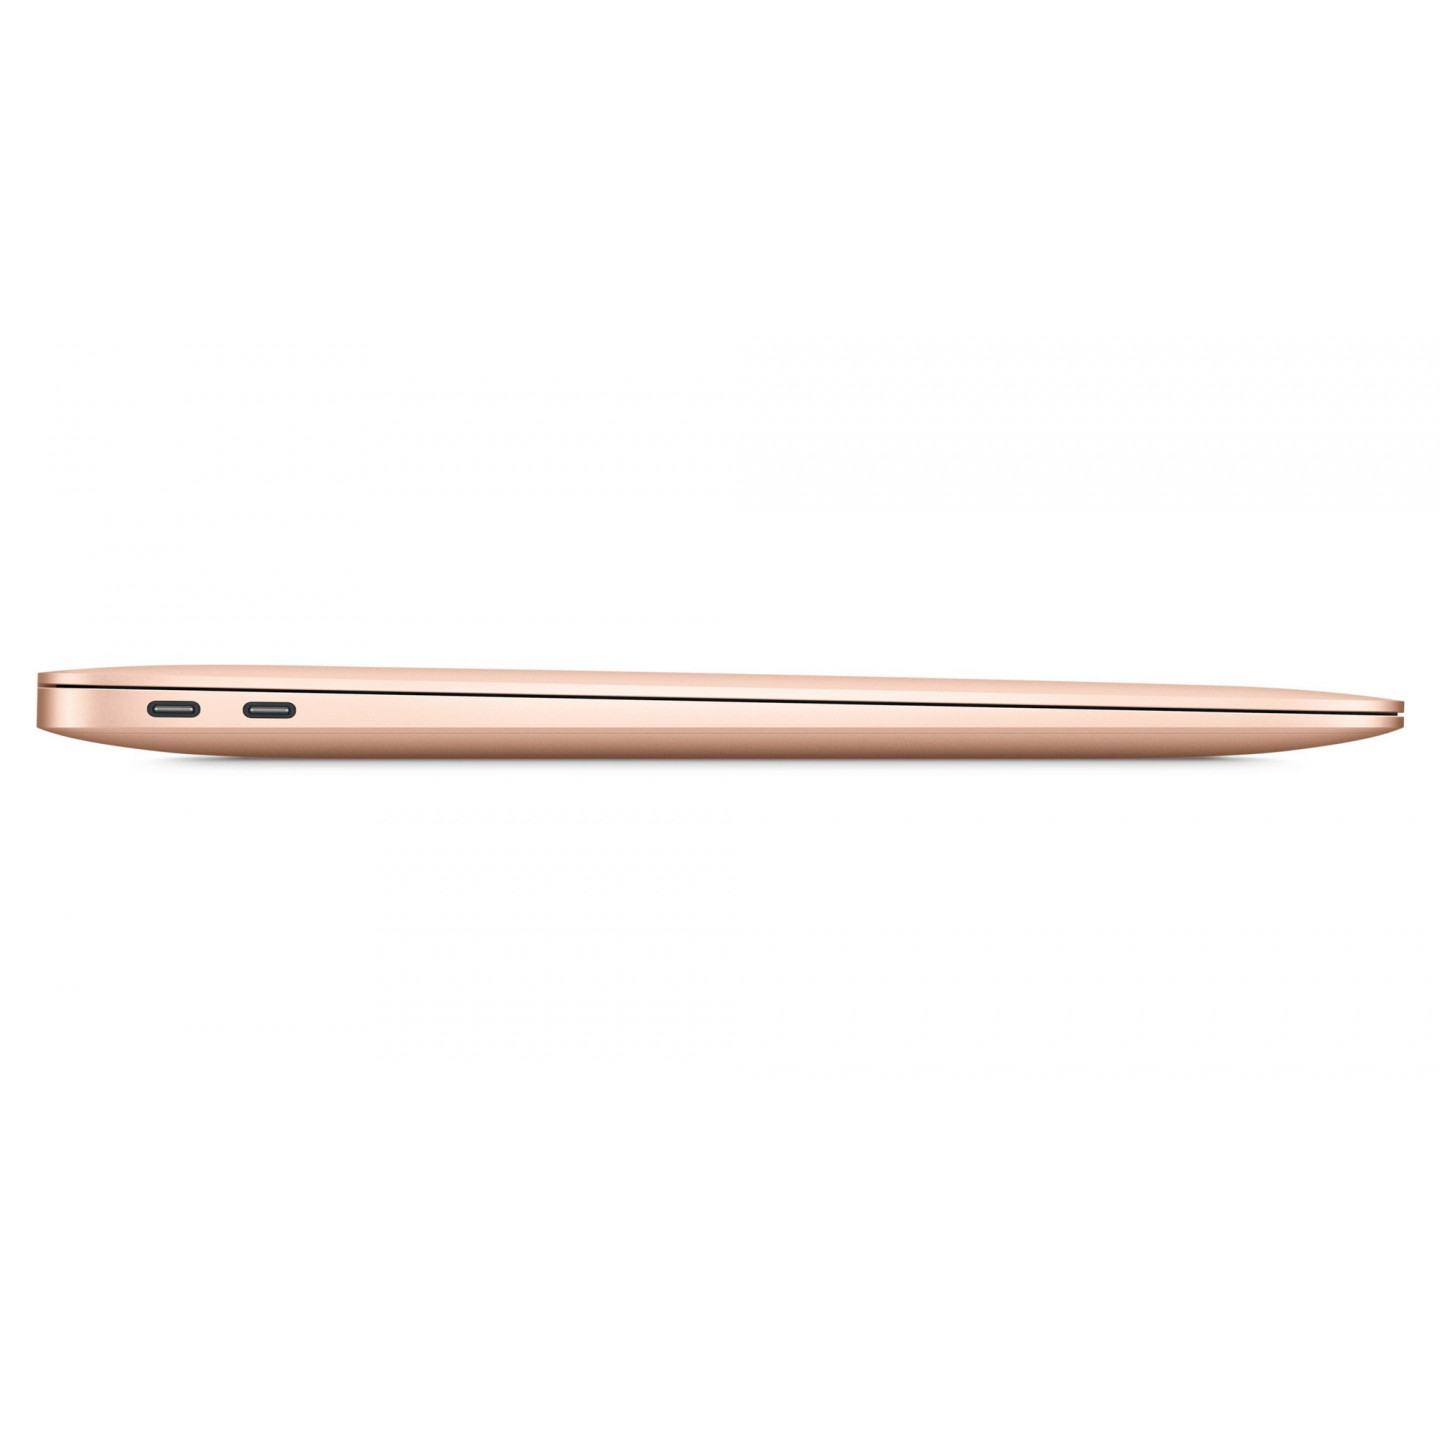 A 579€, cet ancien MacBook Air reconditionné est parfait pour la rentrée  scolaire - CNET France